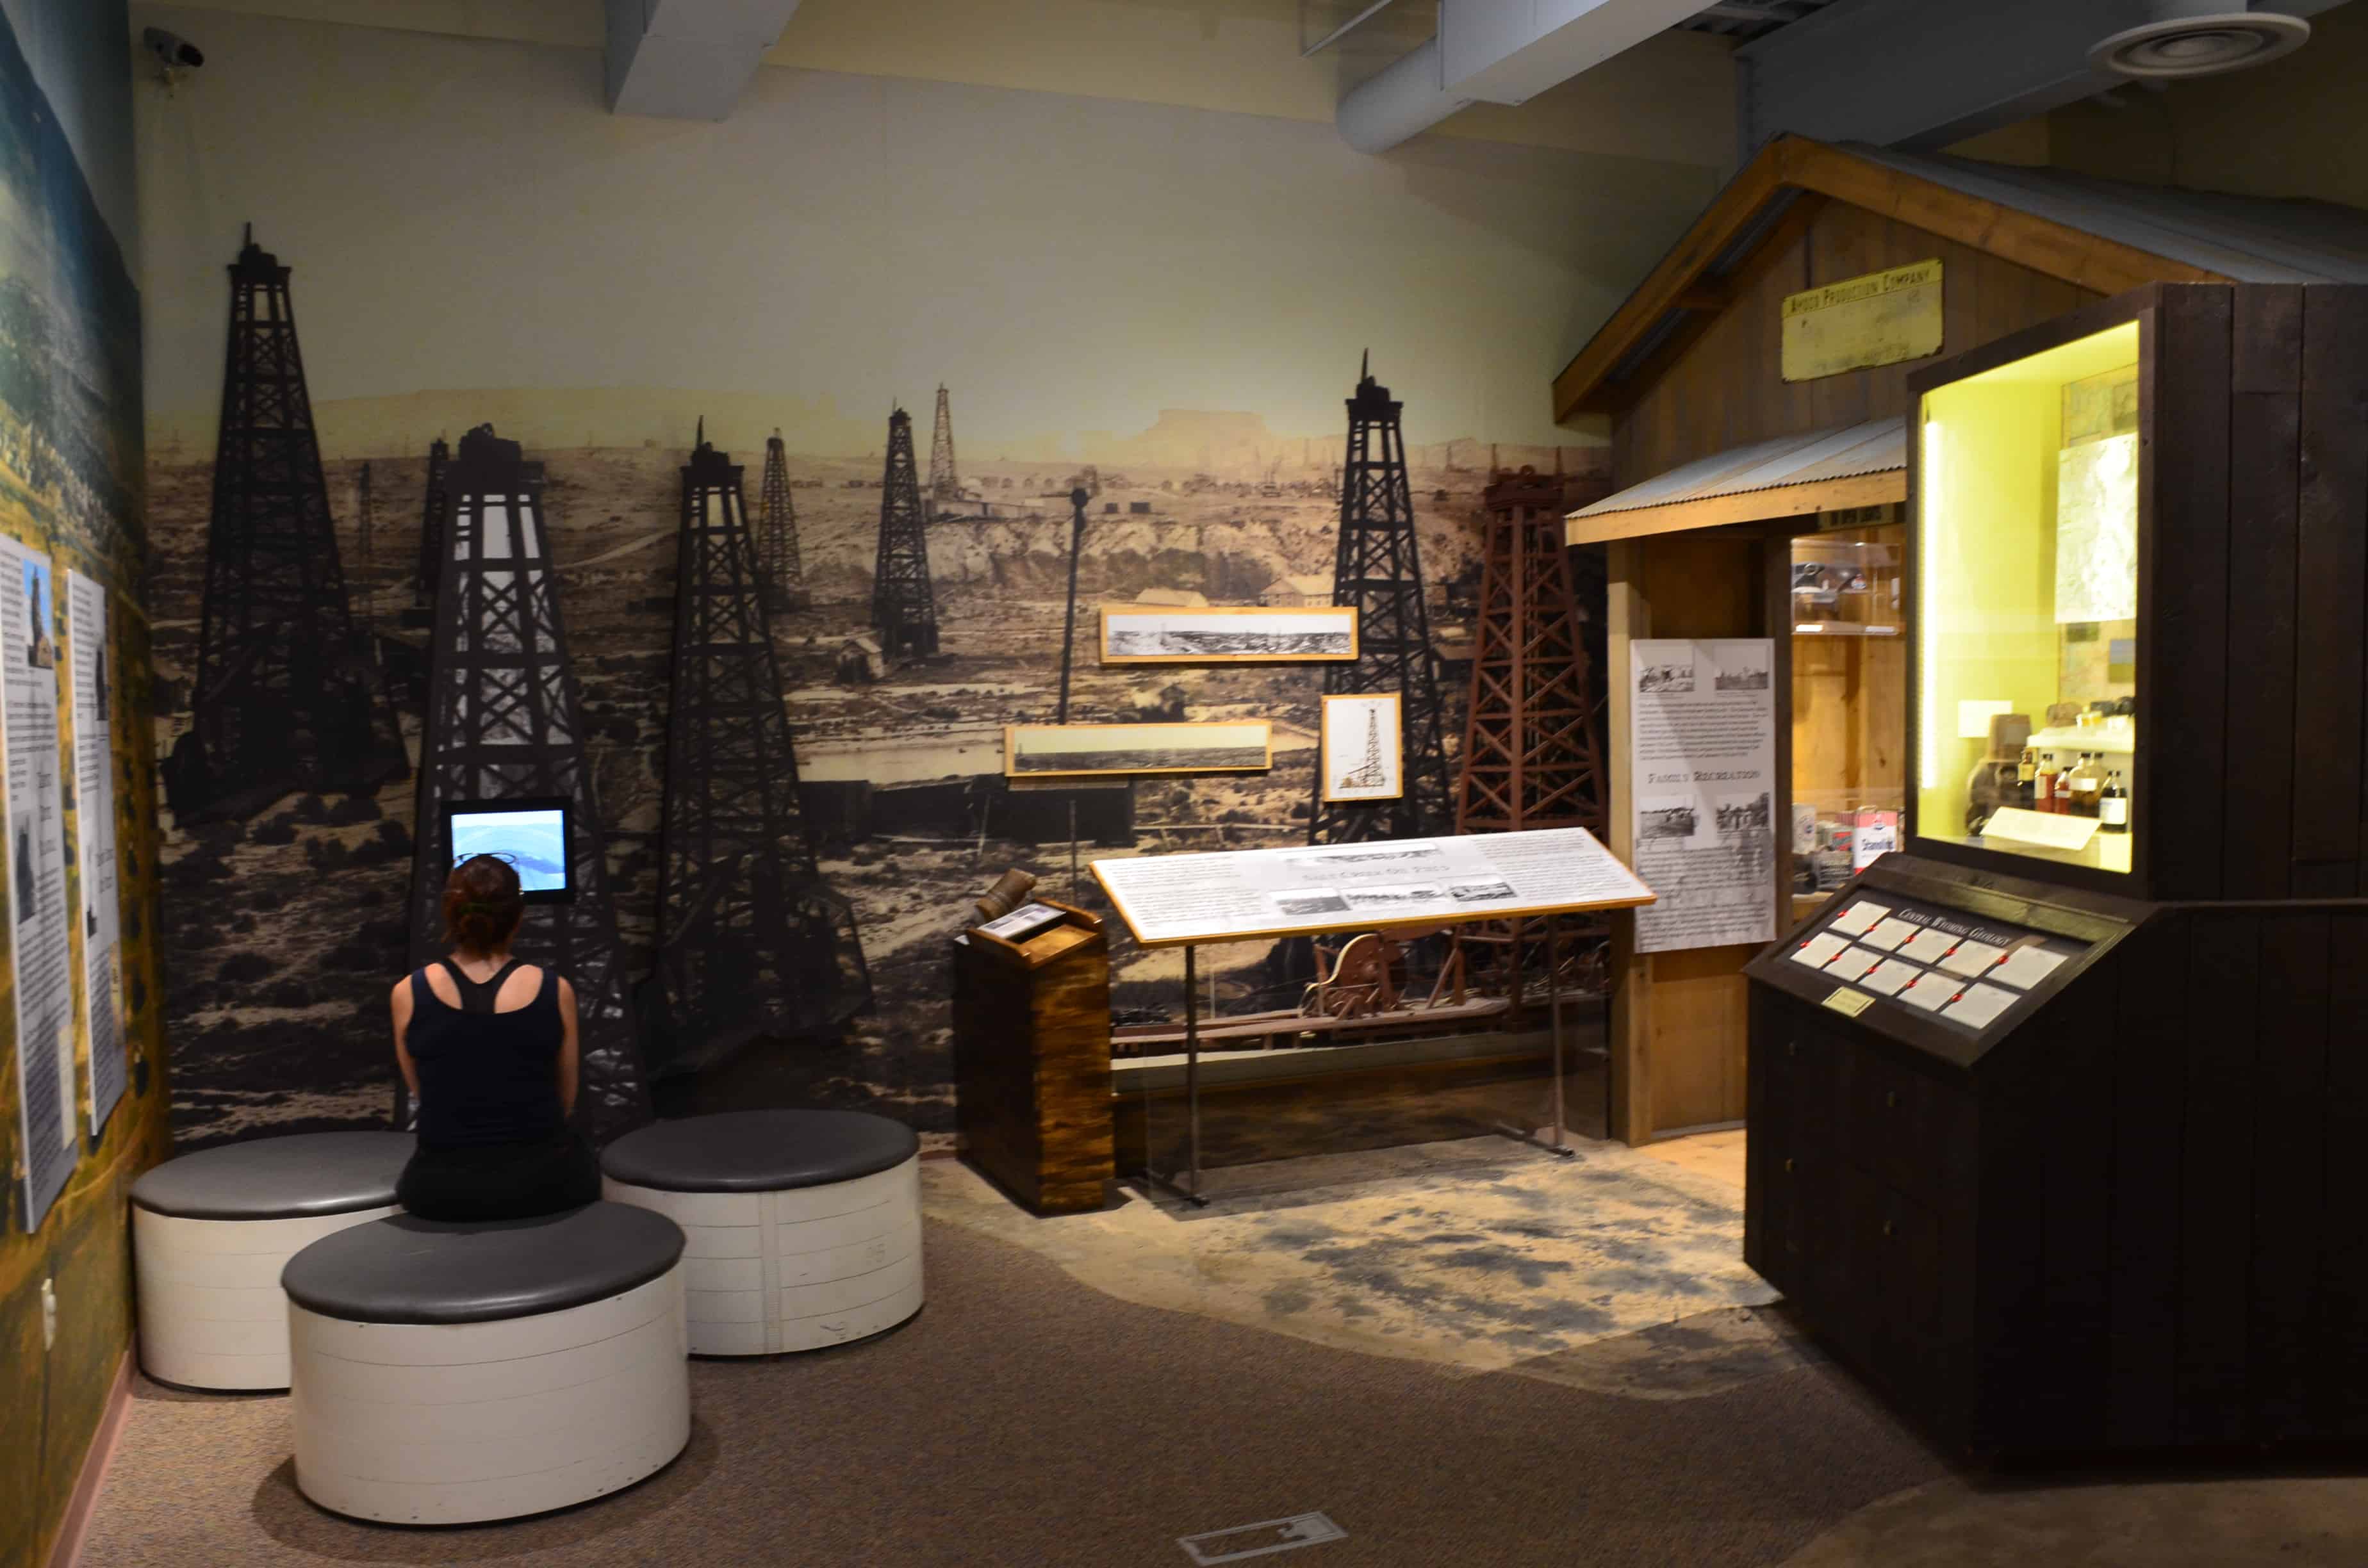 Oil boom exhibit at the Fort Caspar Museum